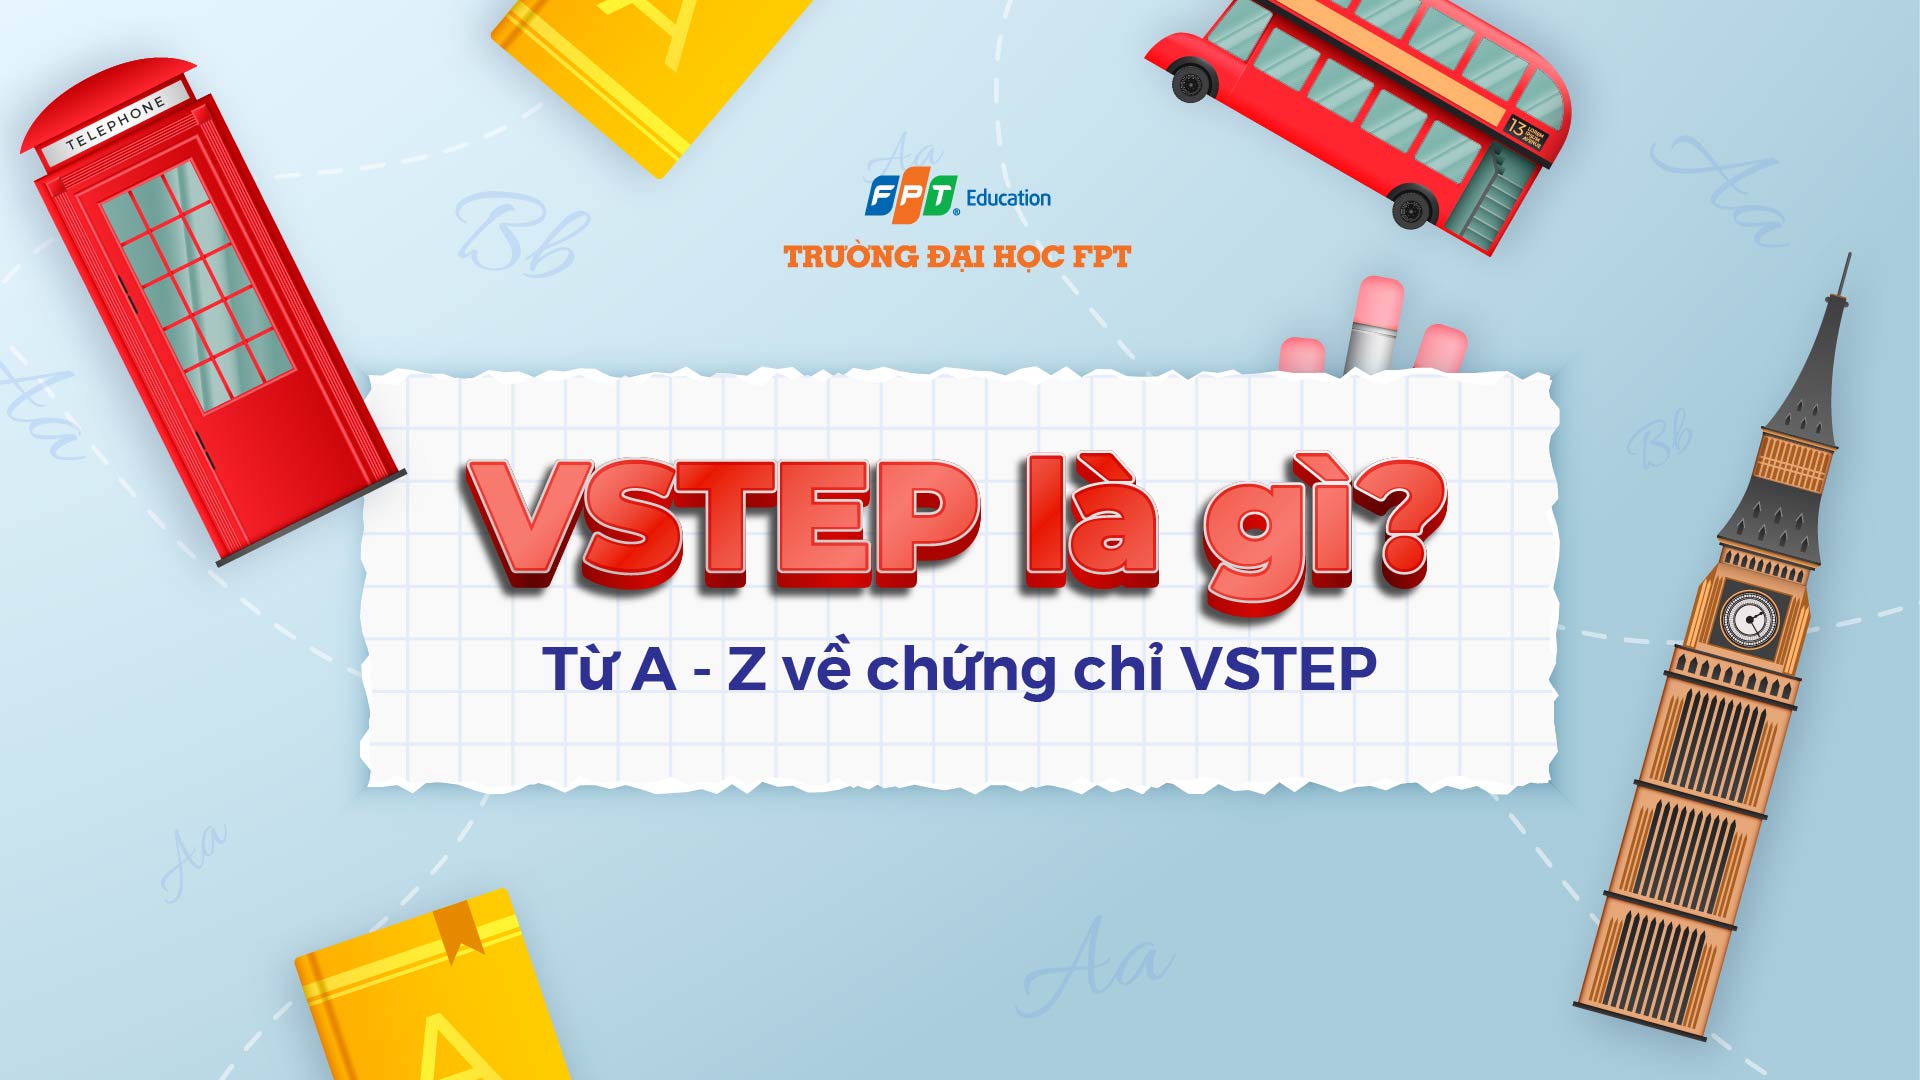 VSTEP là gì? Từ A - Z về chứng chỉ VSTEP